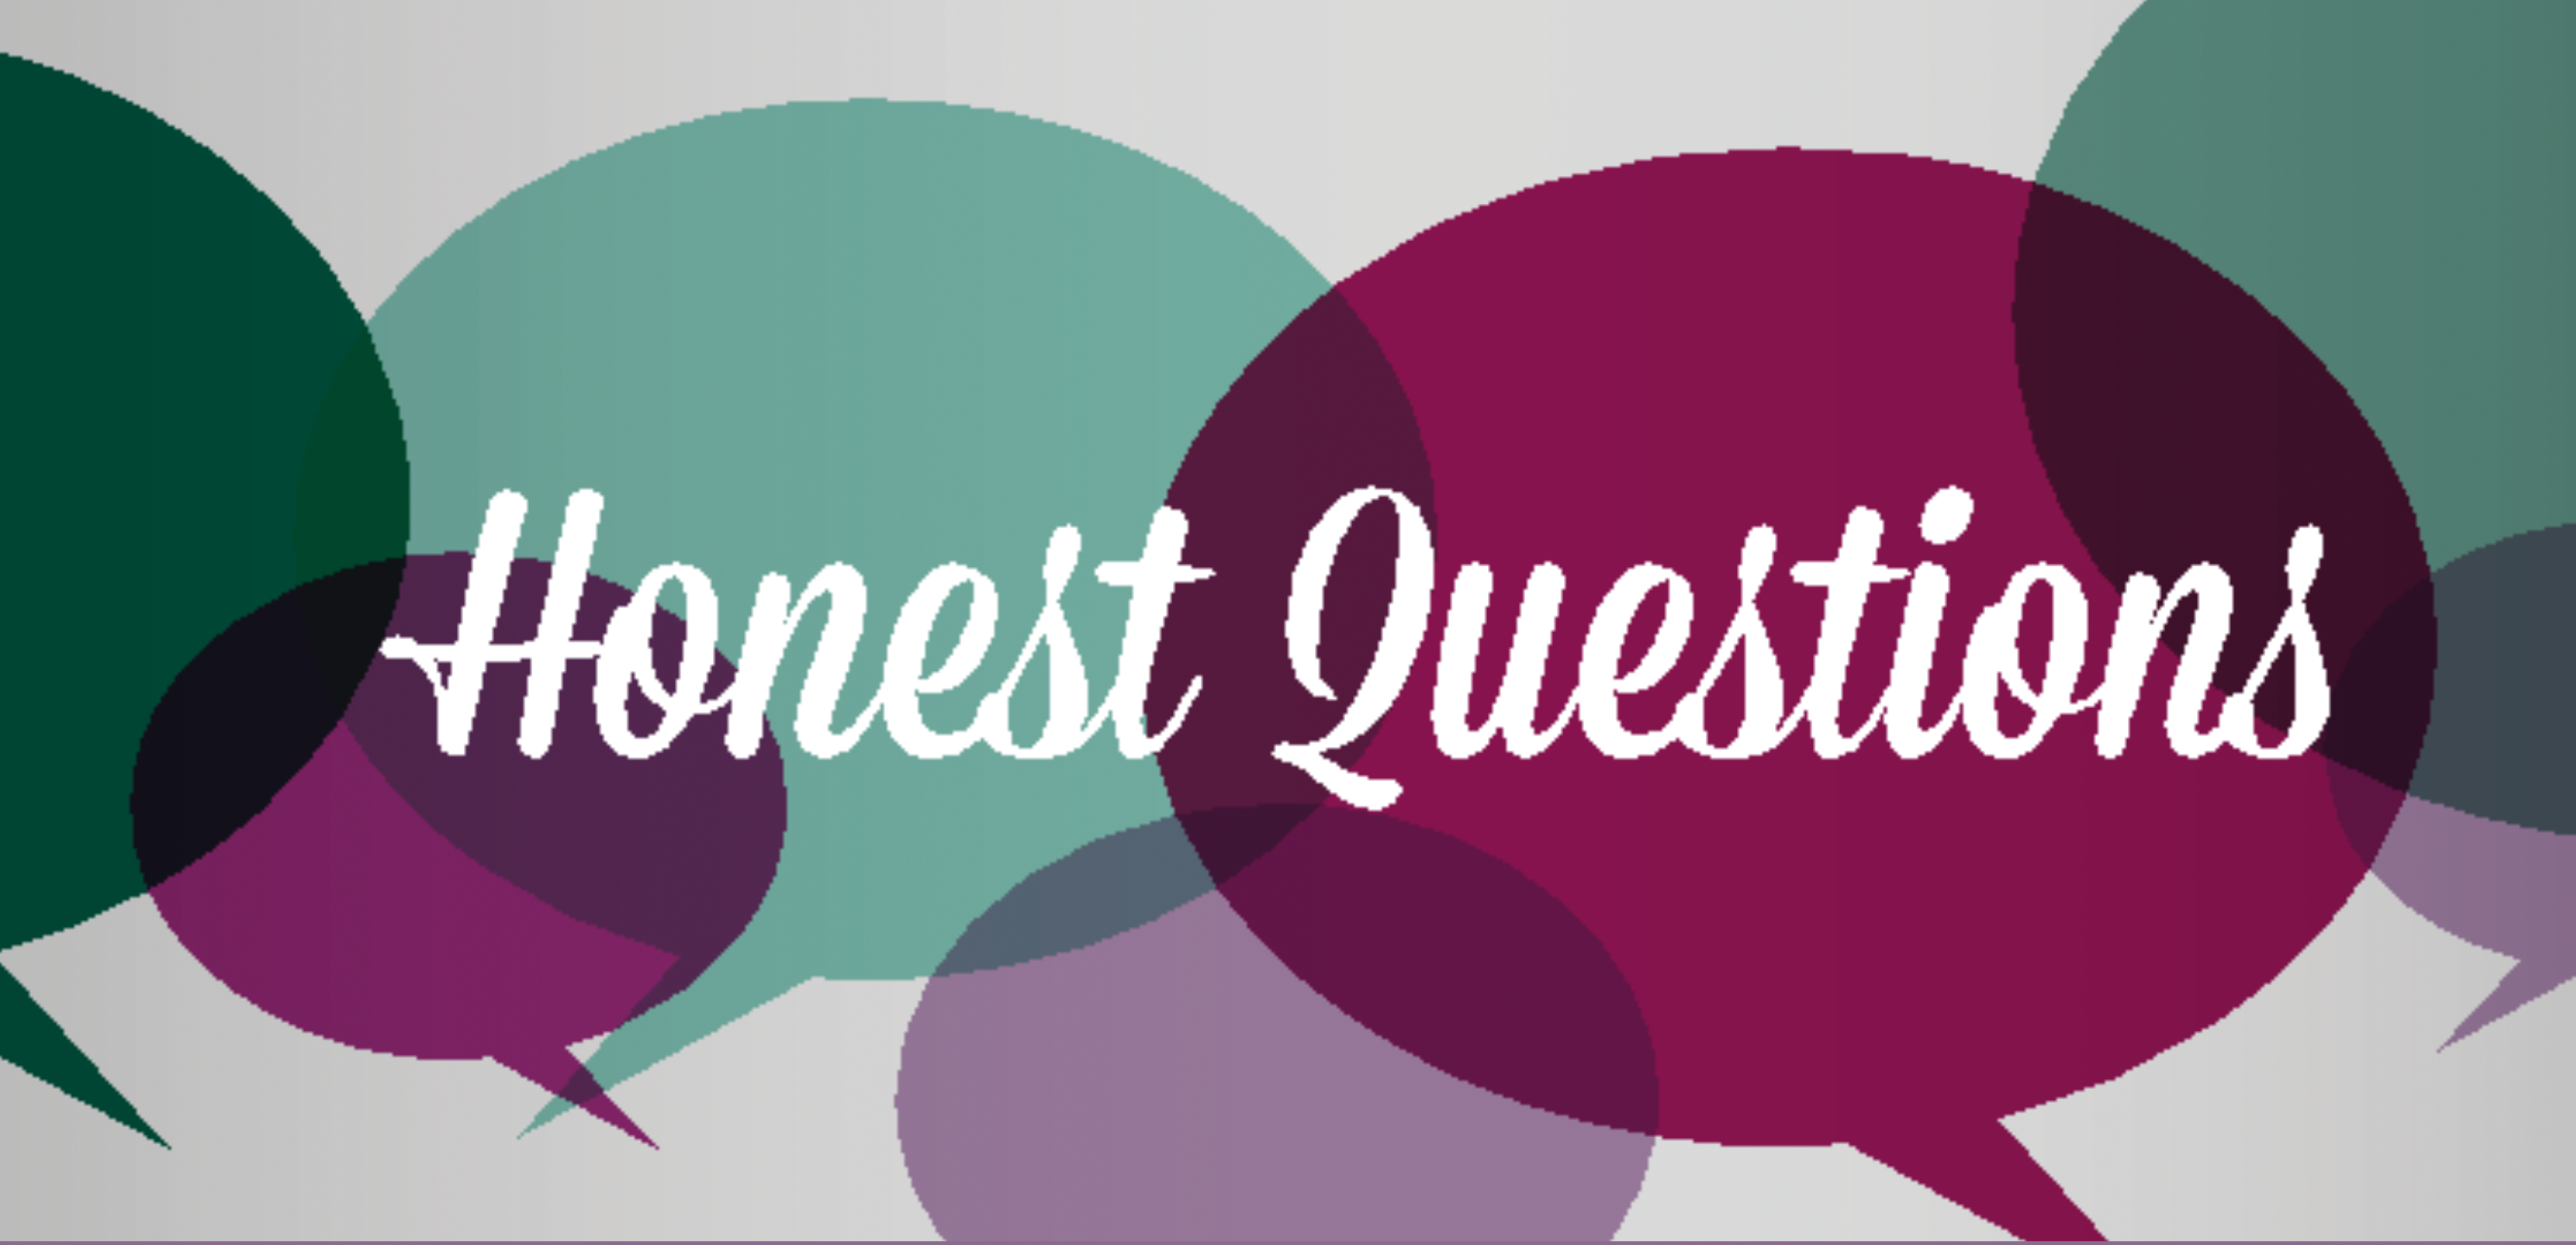 Honest Questions (002)